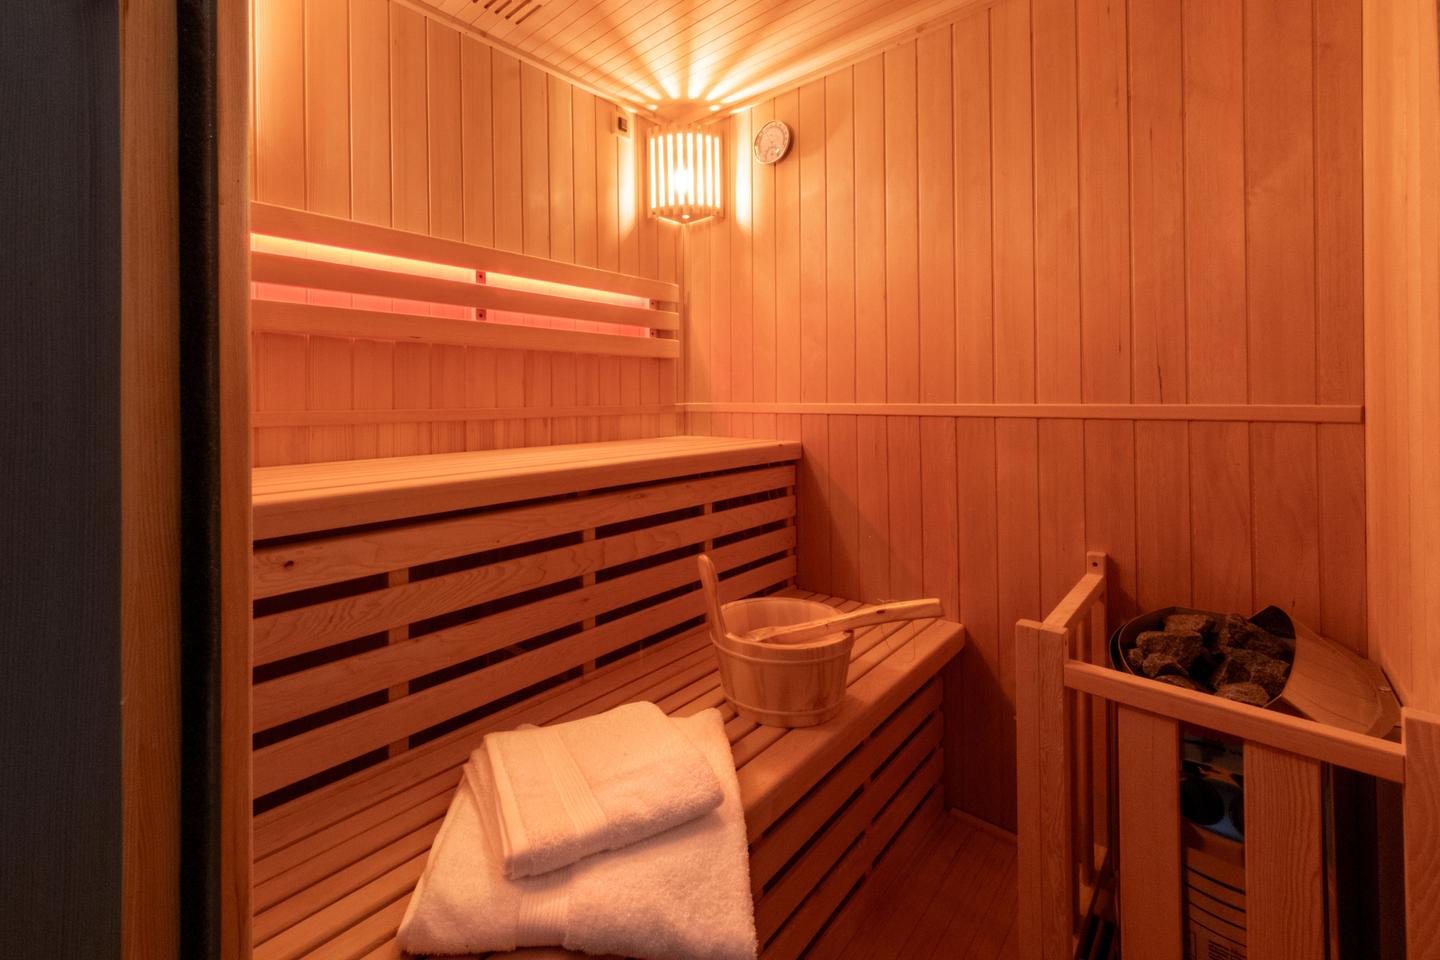 Hôte GreenGo: Viens on s'aime - Suite romantique avec jacuzzi et sauna privatifs - Image 8